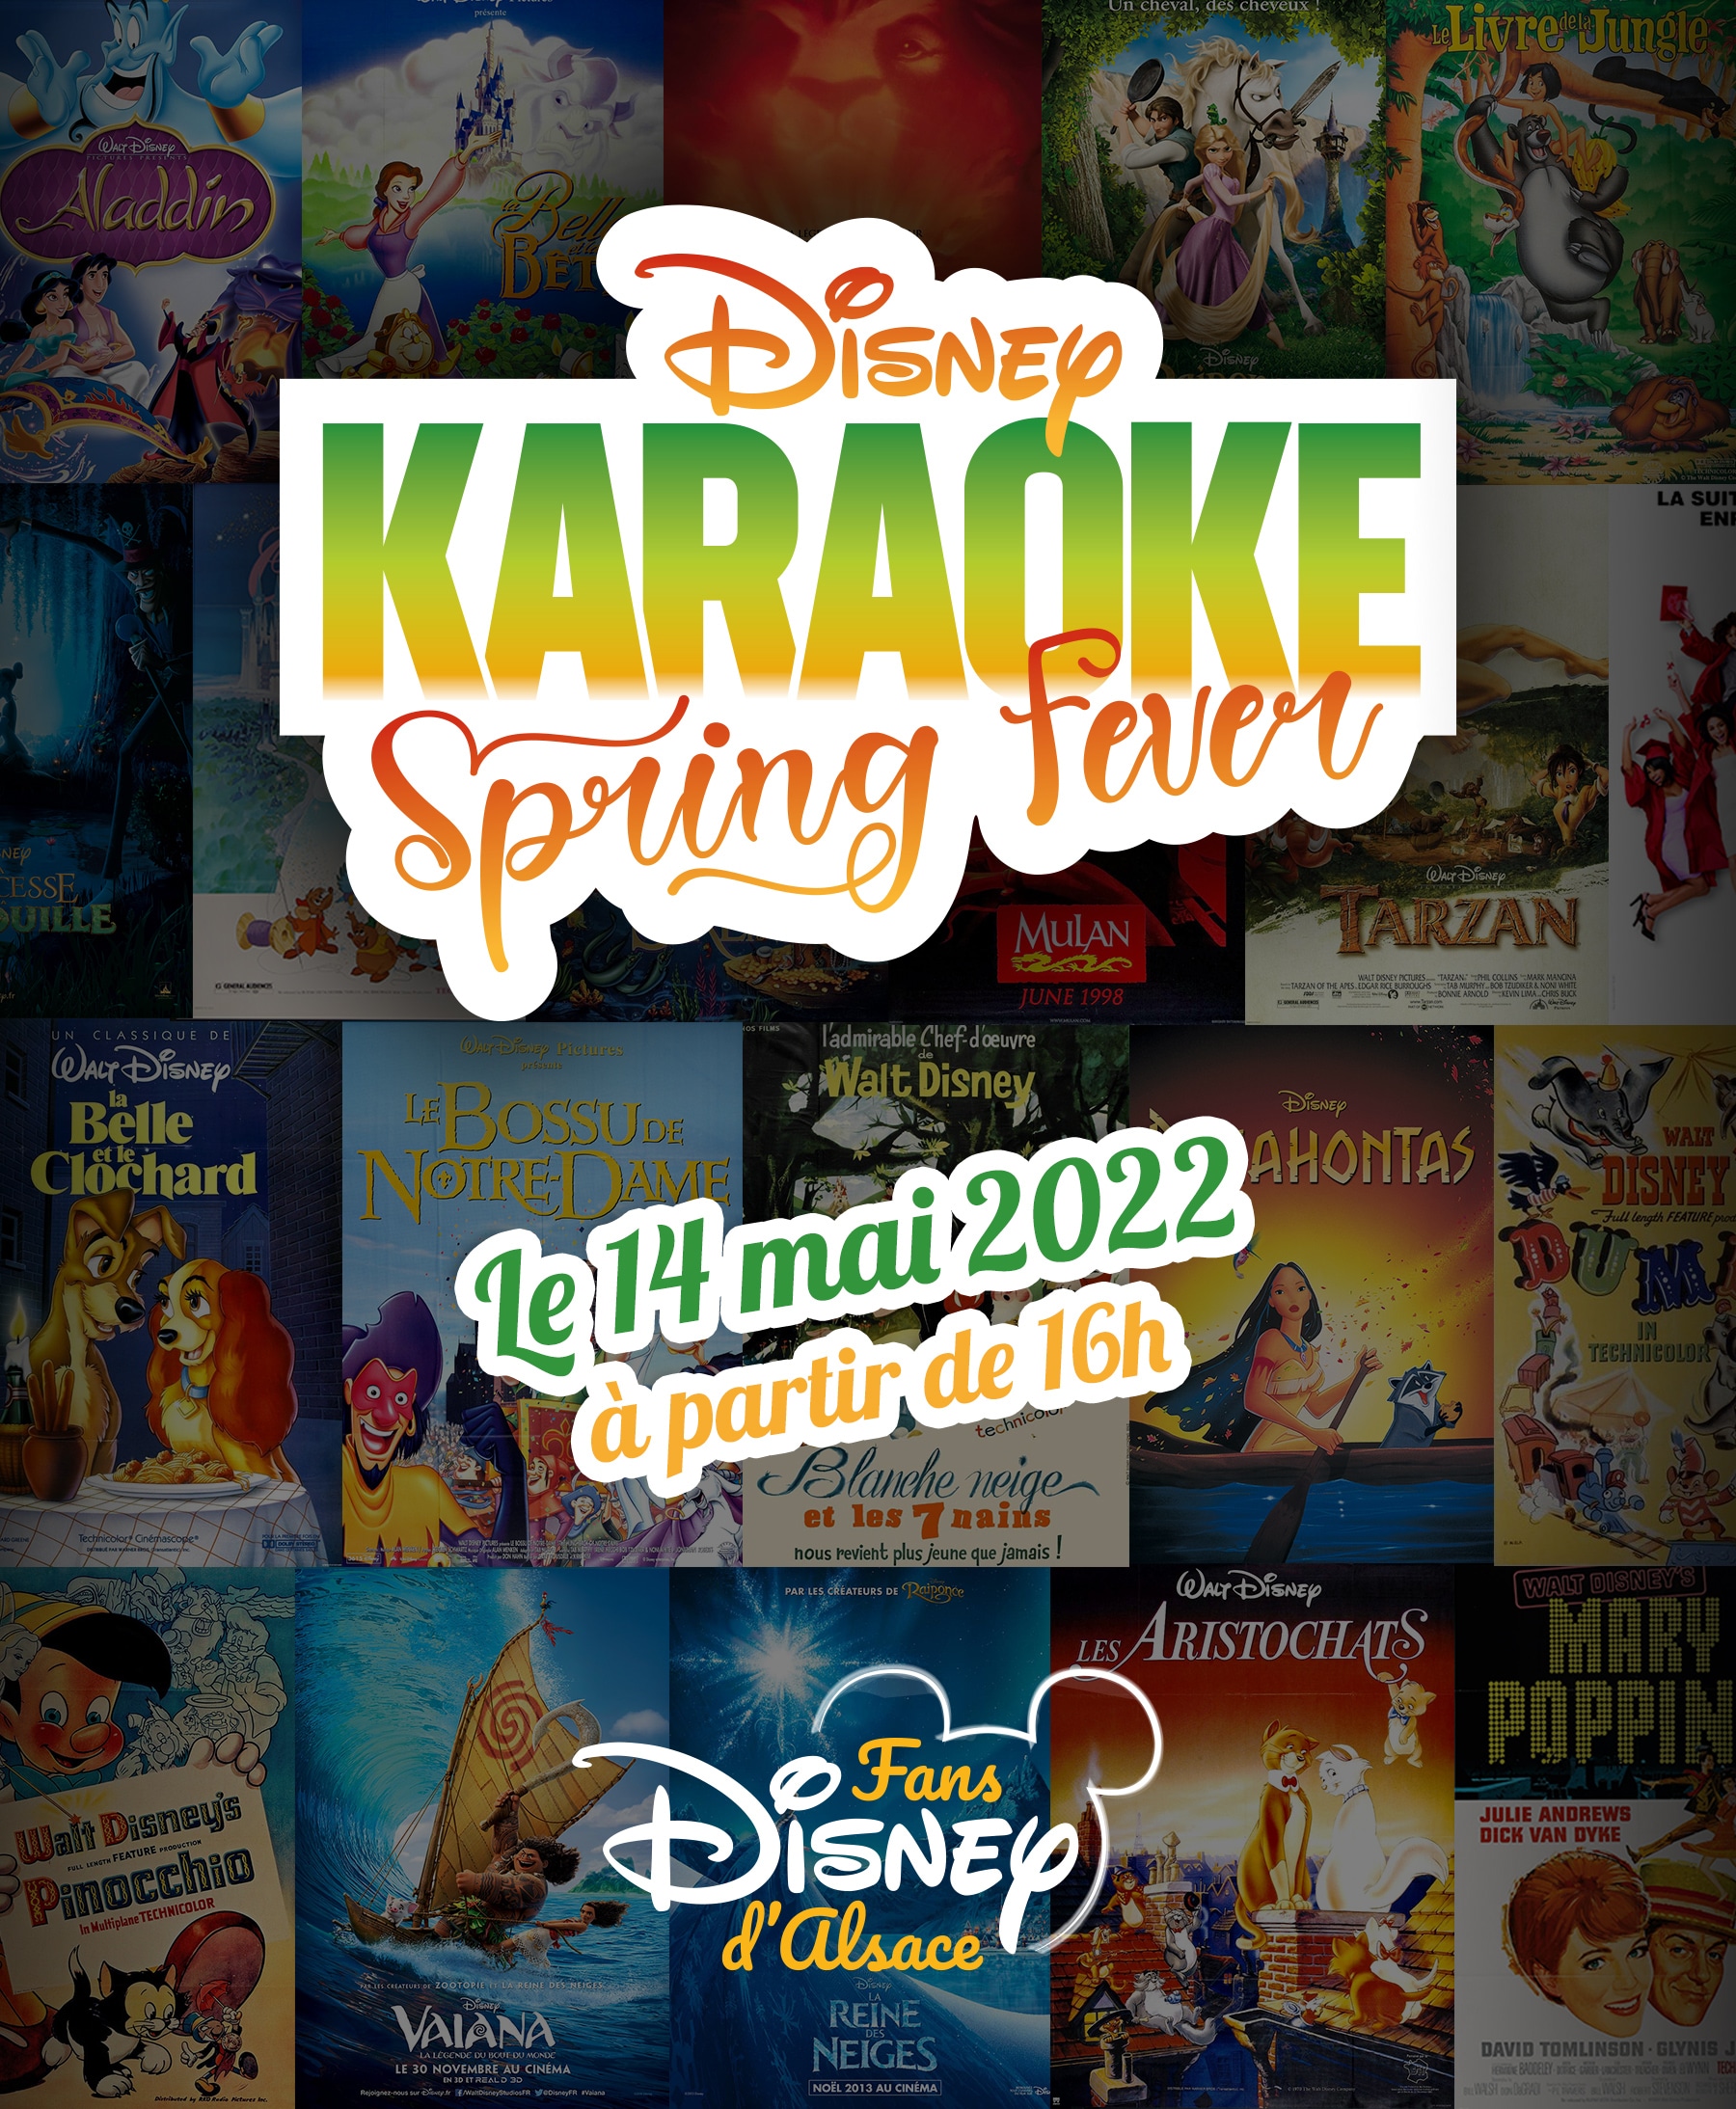 Disney Karaoke Spring Fever